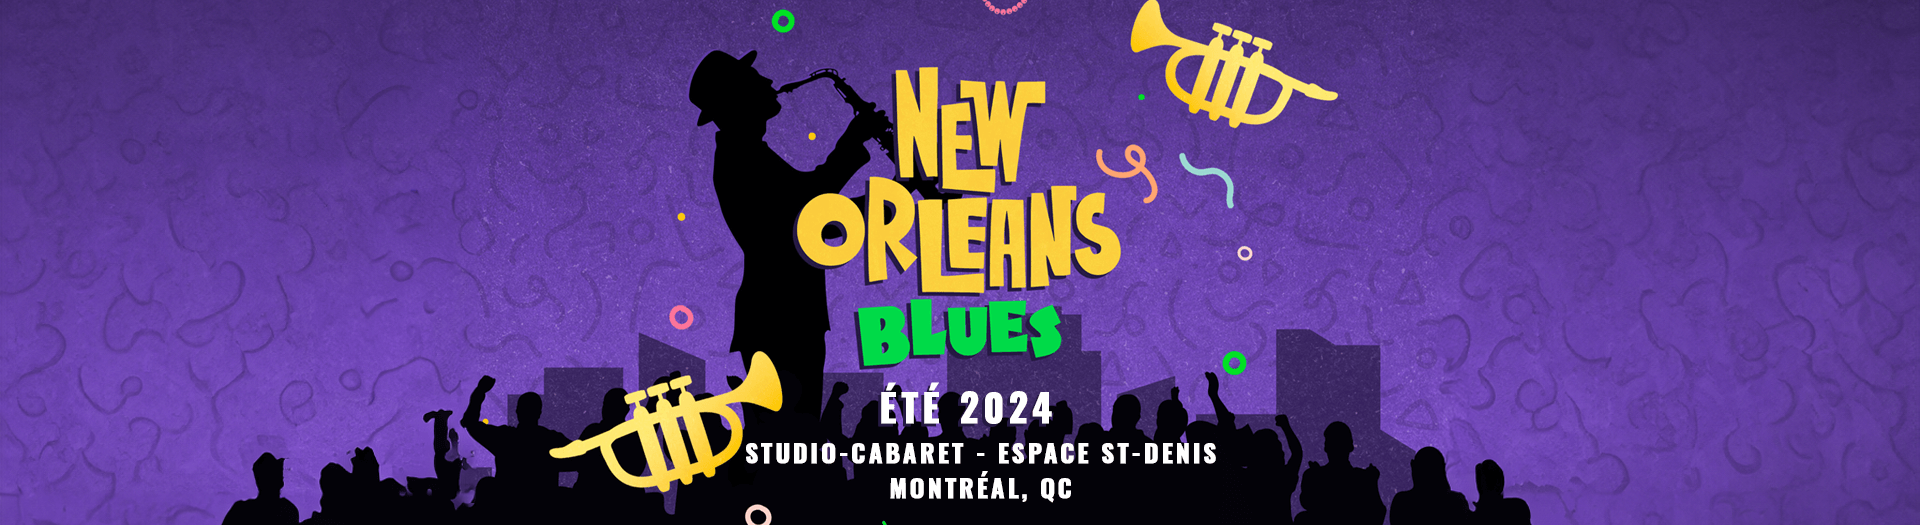 NEW ORLEANS BLUES, Studio-Cabaret - Espace St-Denis, Montréal